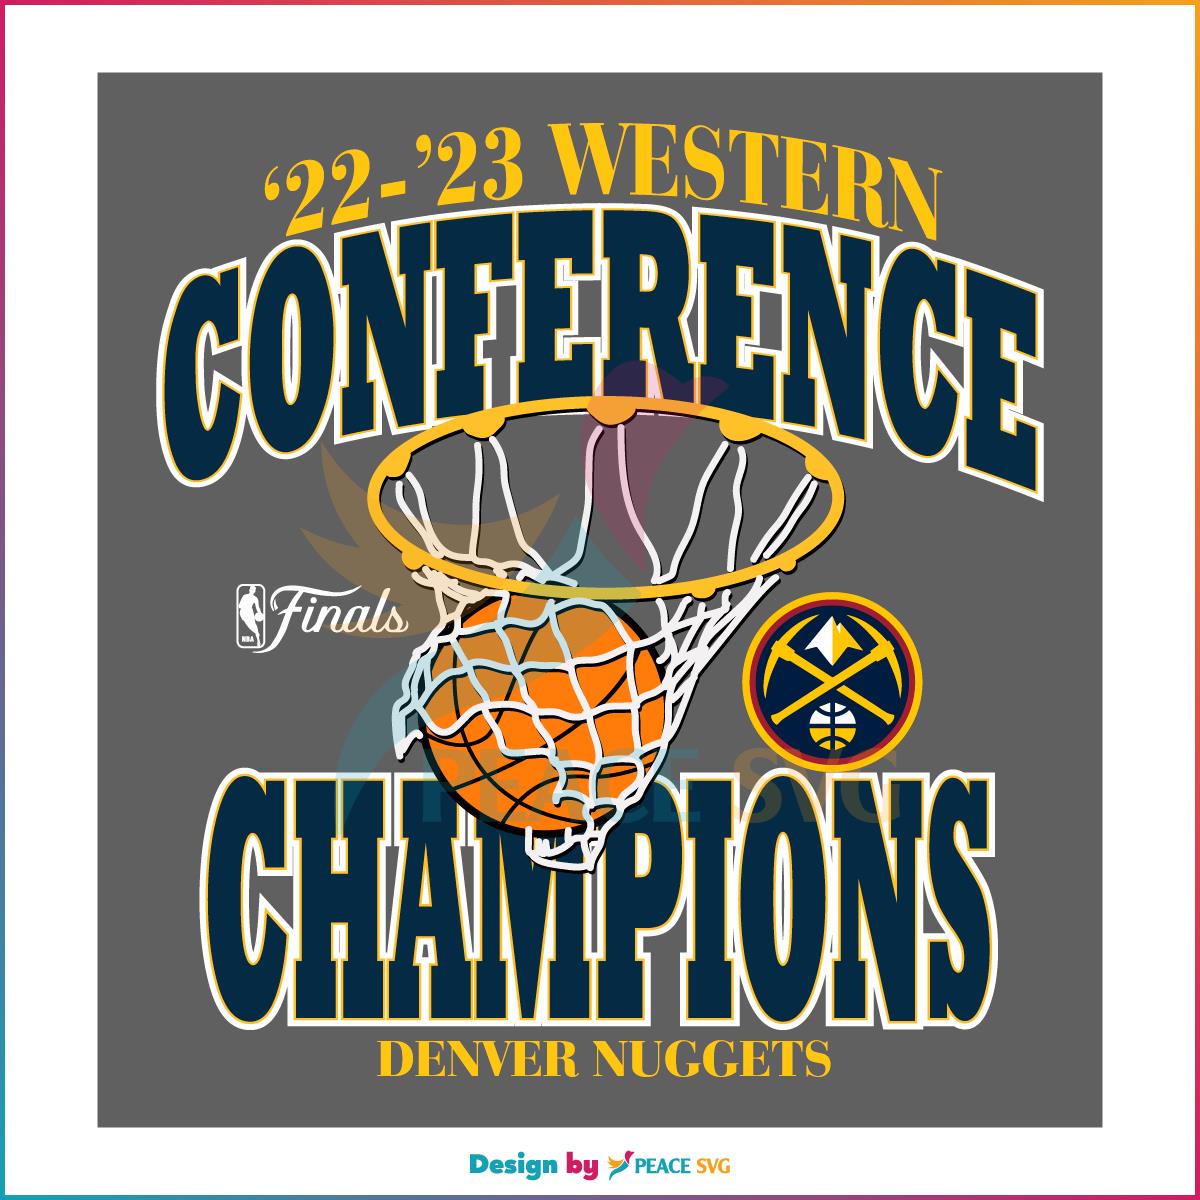 Denver Nuggets 2023 Western Conference Champions Denver Nuggets Fans SVG